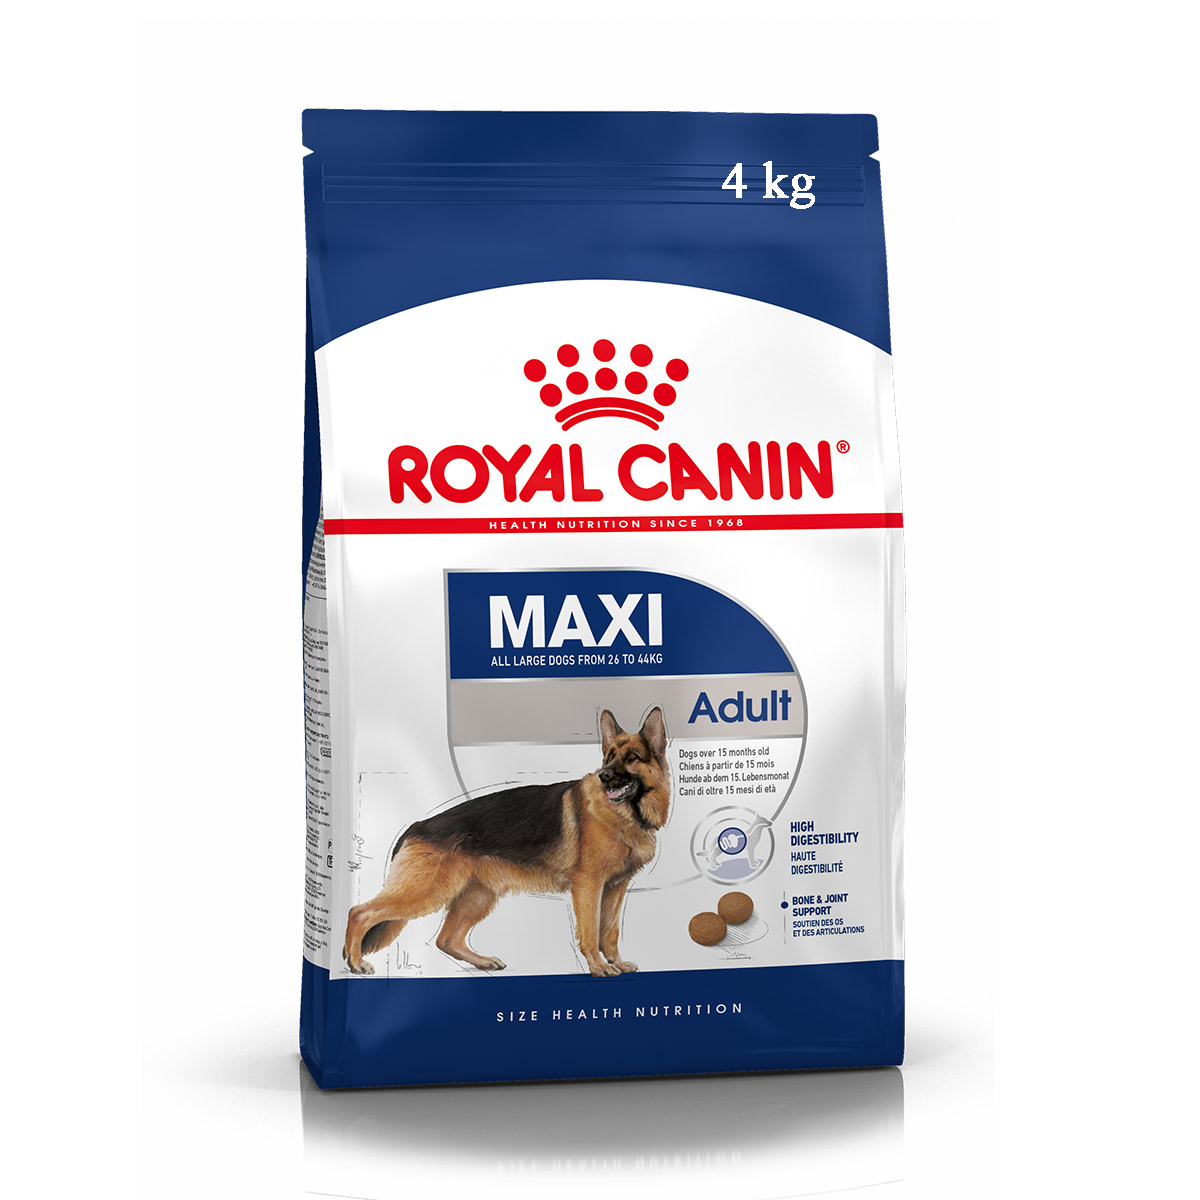 Royal canin maxi adult - Thức ăn cho chó trưởng thành cỡ lớn 4kg